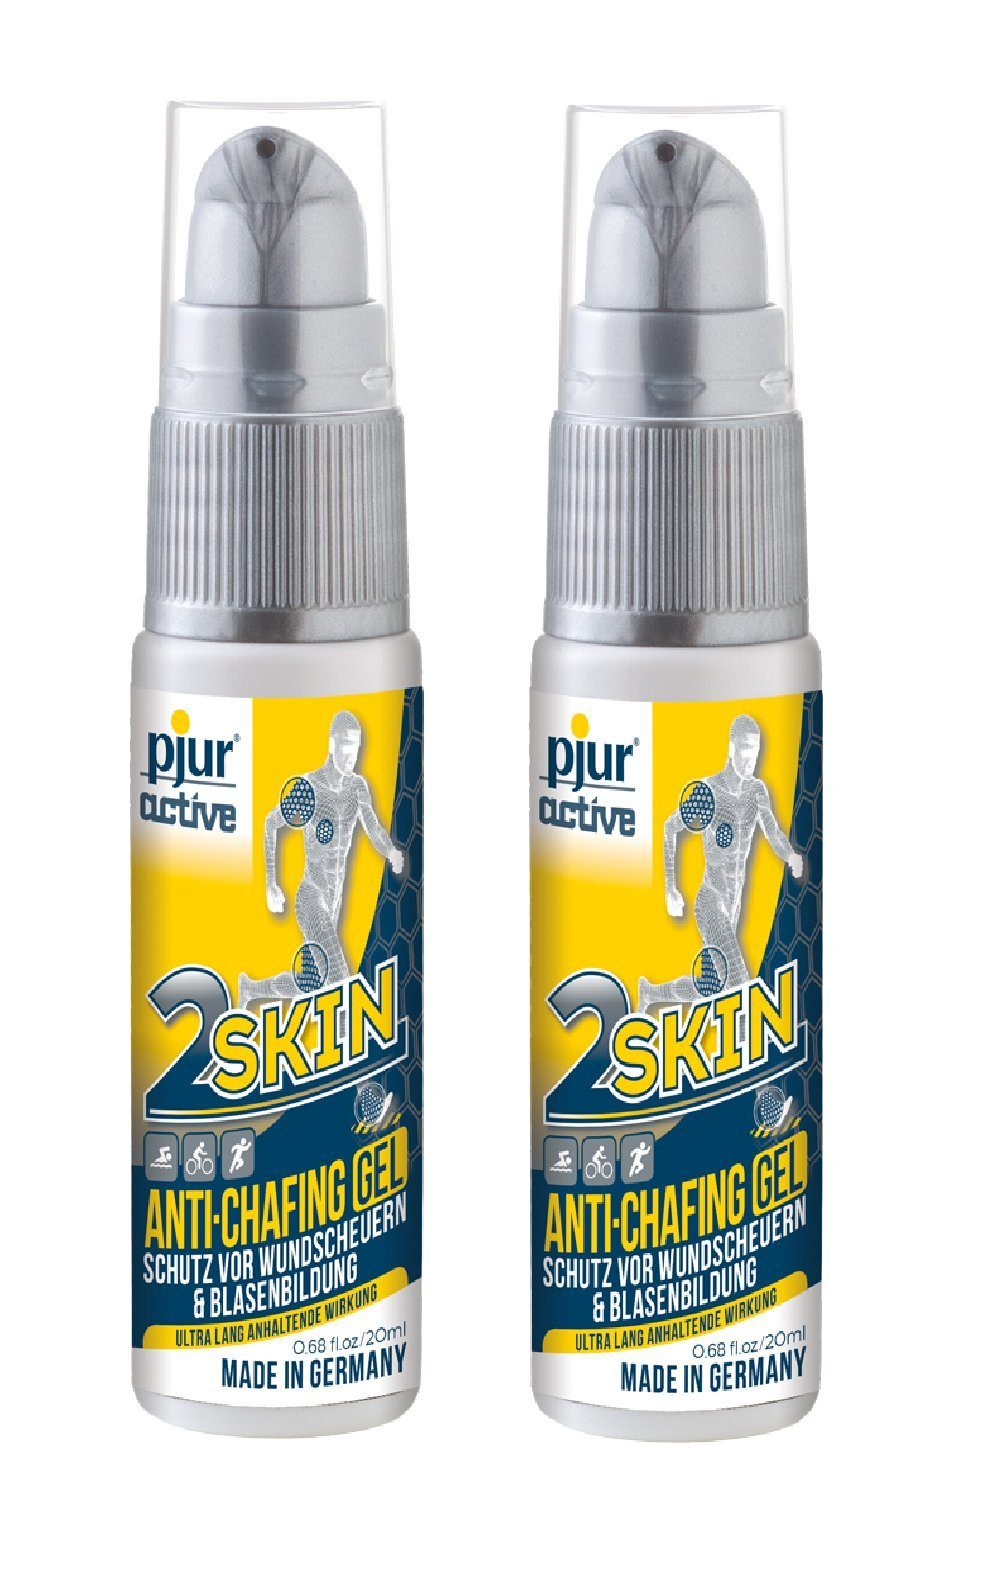 pjur Hautpflegegel pjuractive 2SKIN Pumpspender 2x 20ml Anti Chafing Gel, gegen Reibung & Wundscheuern perfekt für Sportler - Made in Germany